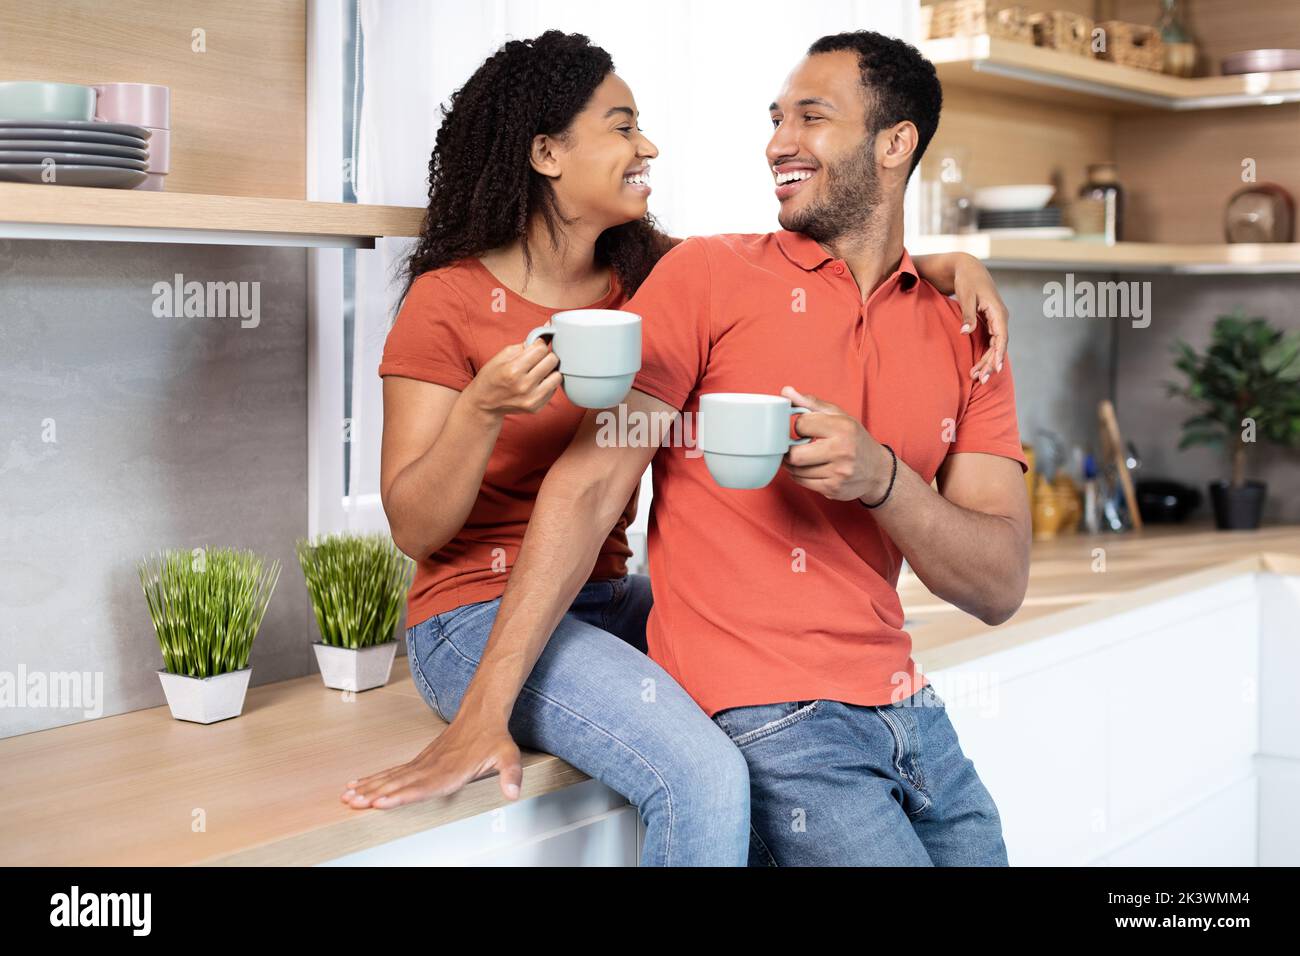 Sorridente donna nera millenaria che abbraccia l'uomo, allietano le tazze con il caffè, godono di tempo libero in cucina interna Foto Stock